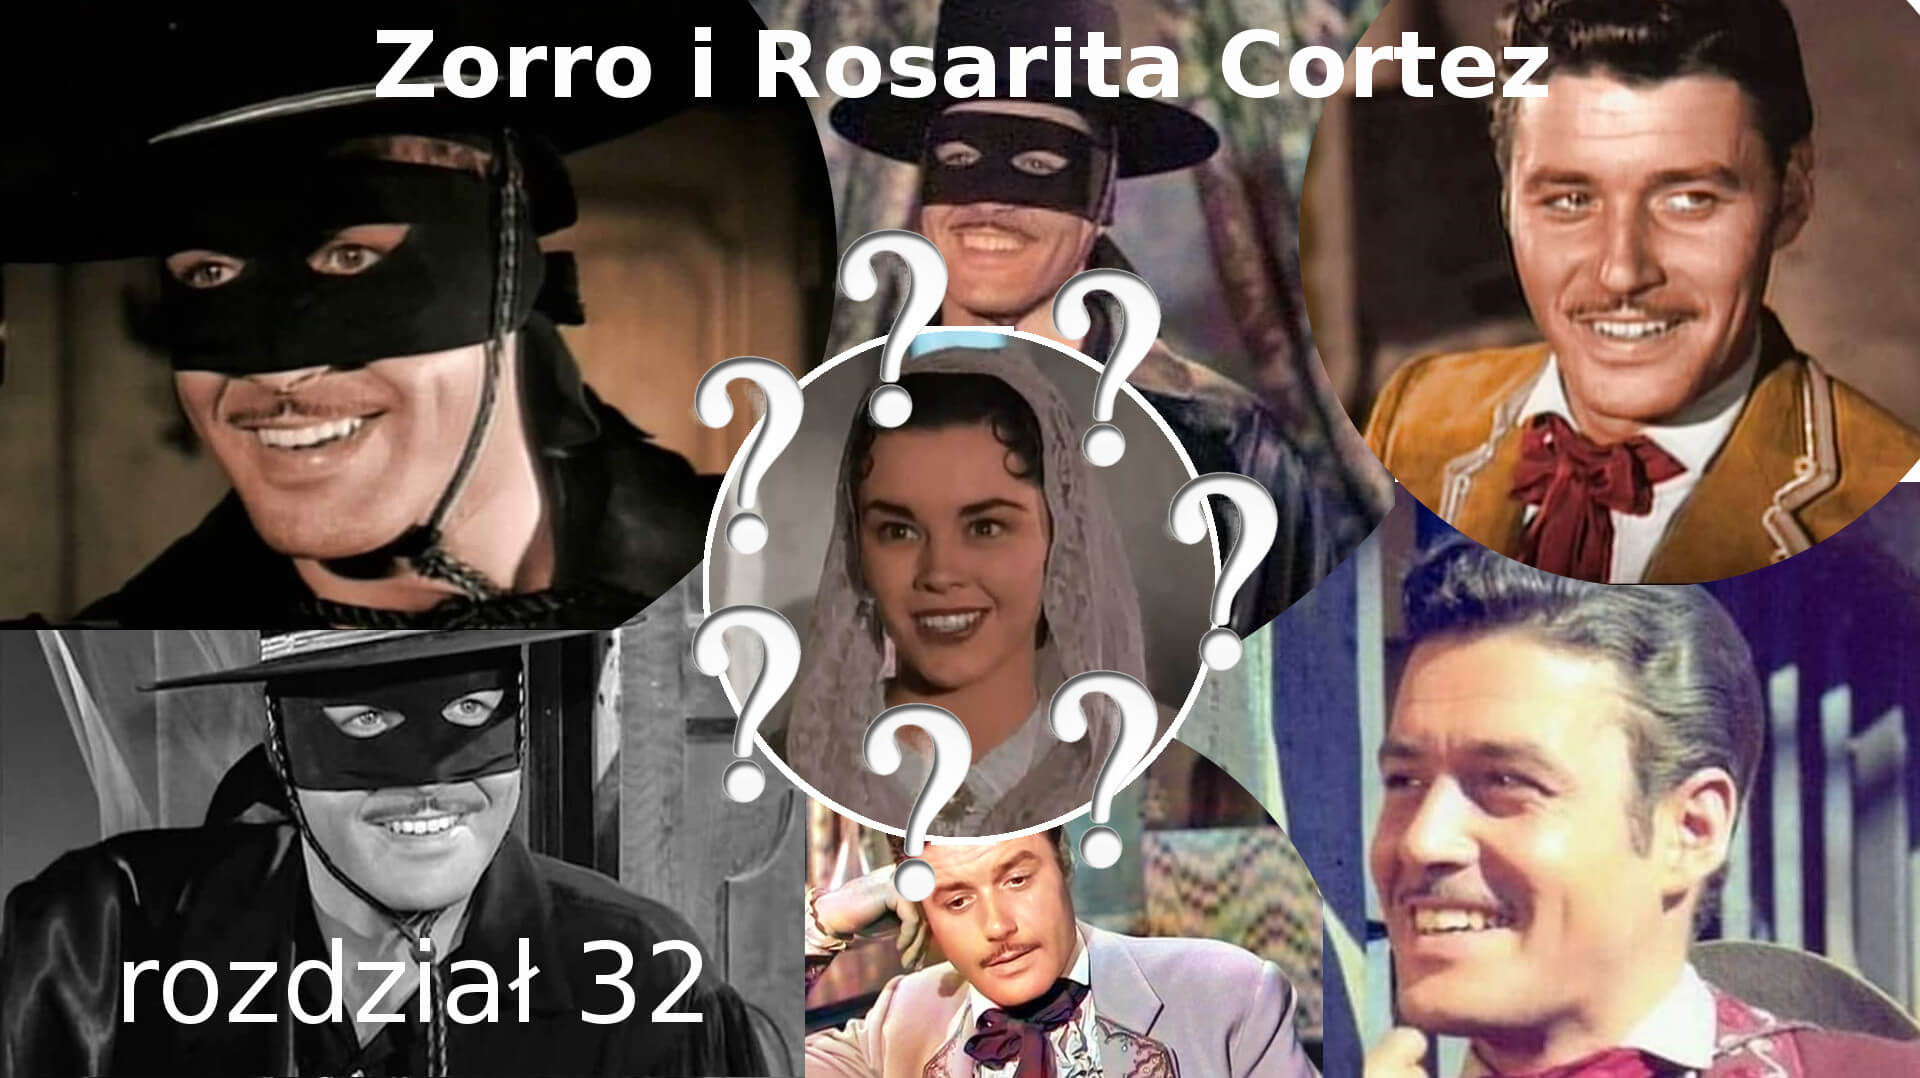 Zorro i Rosarita Cortez rozdział 32 Walt Disney Zorro fanfiction